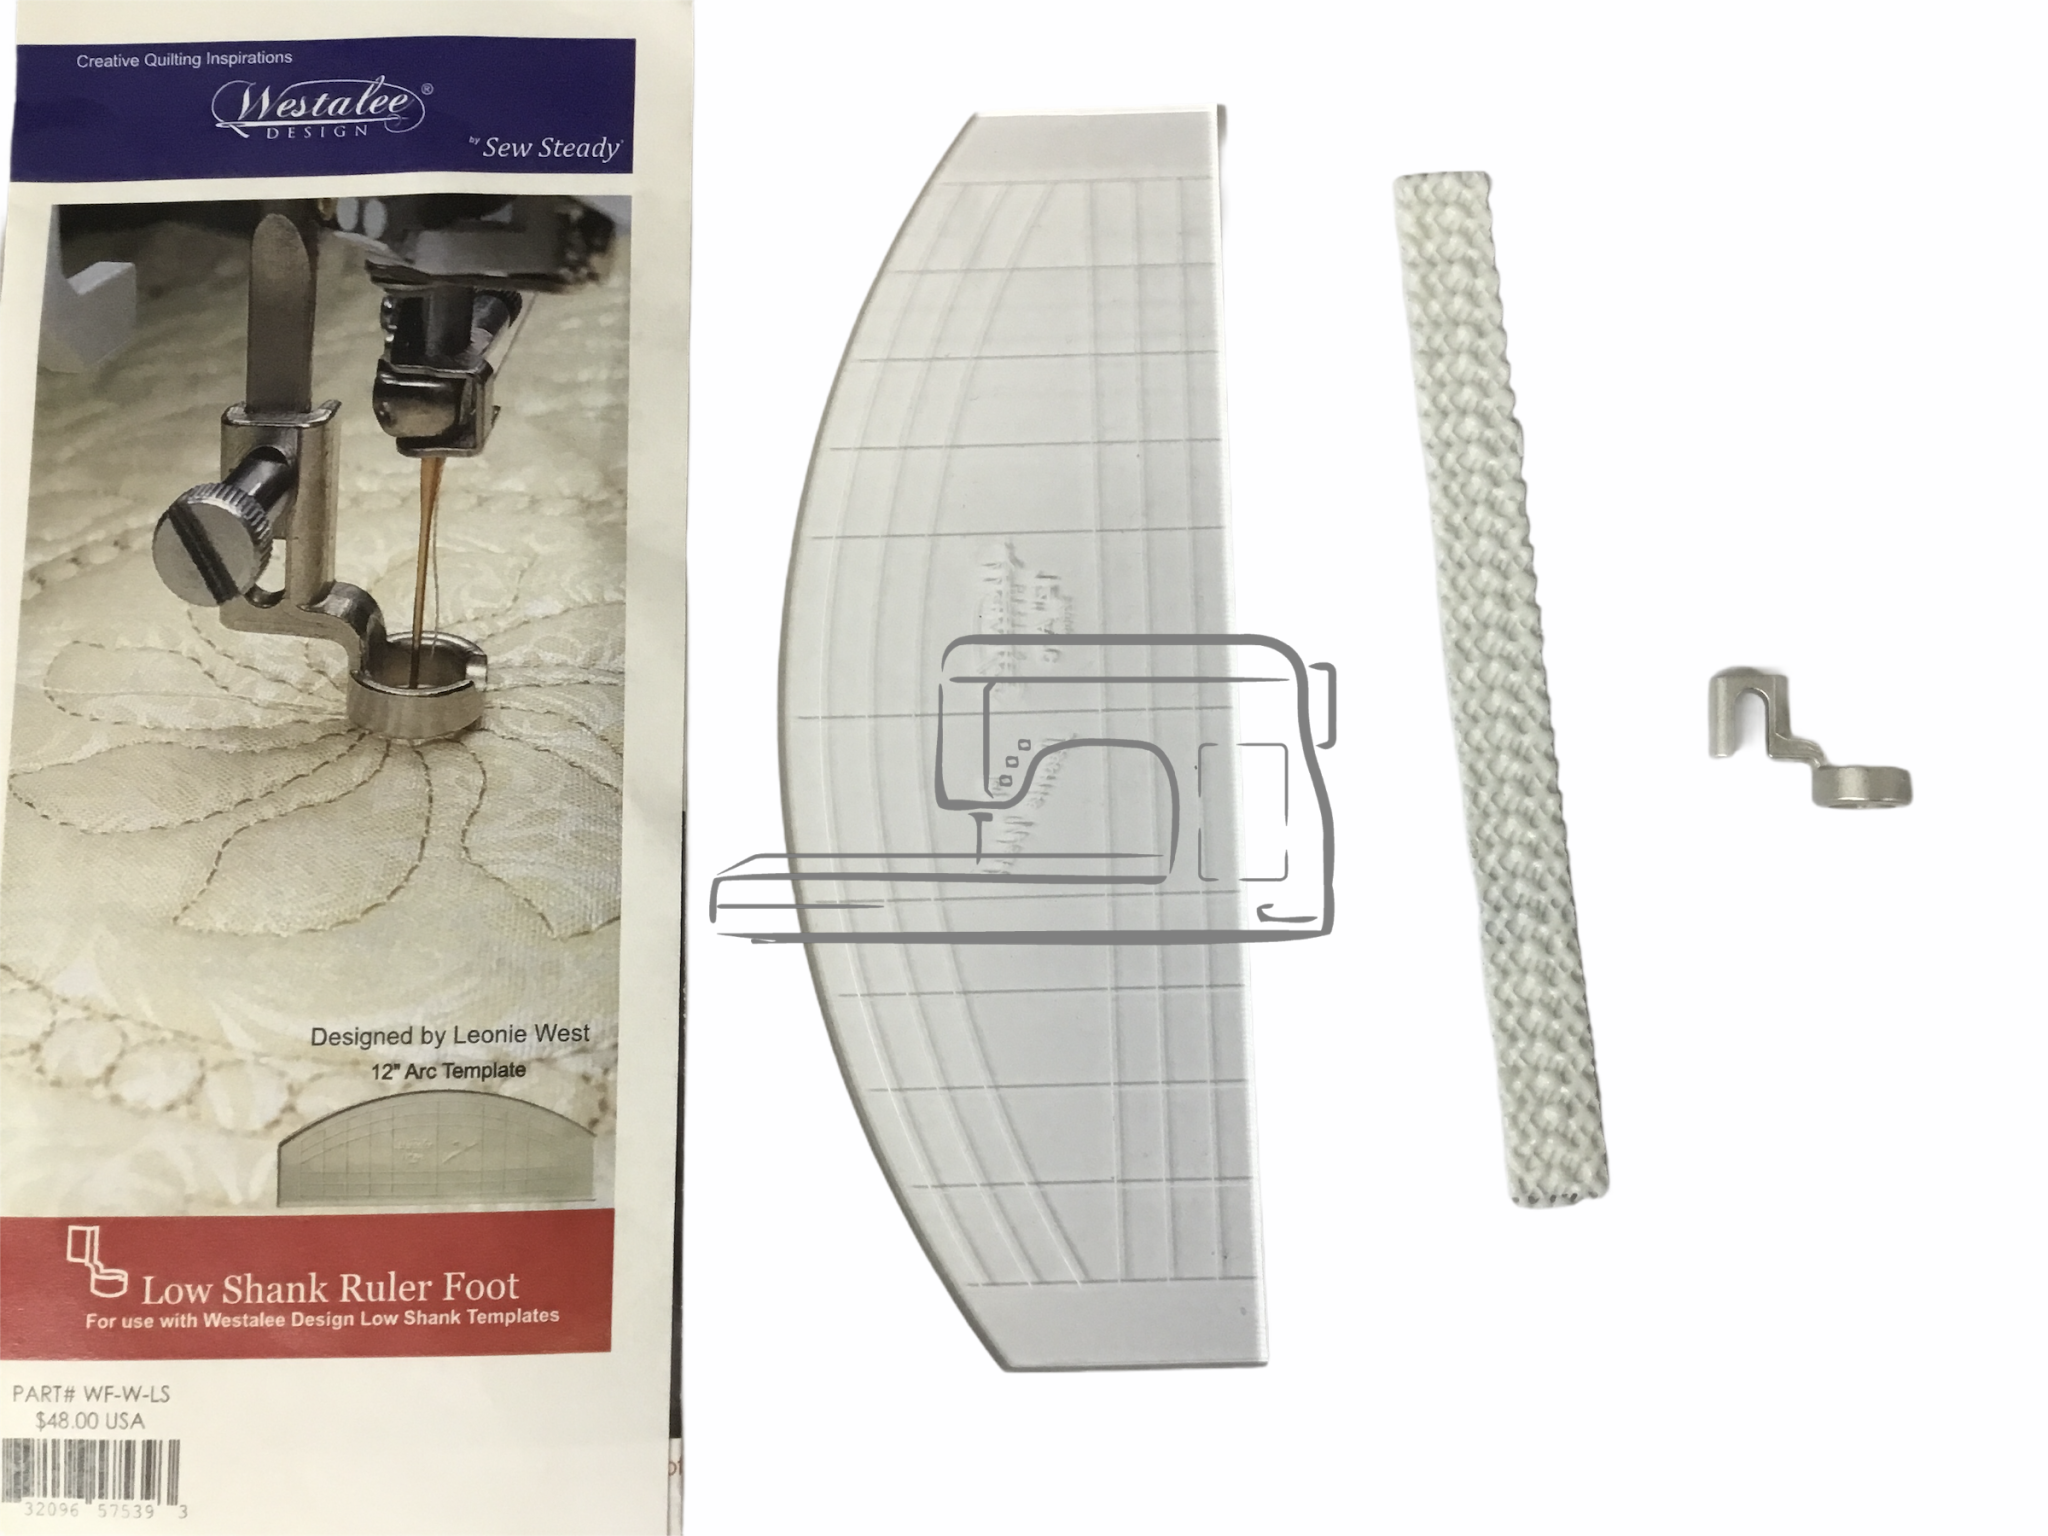 Westalee Westalee Ruler Foot Starter Package